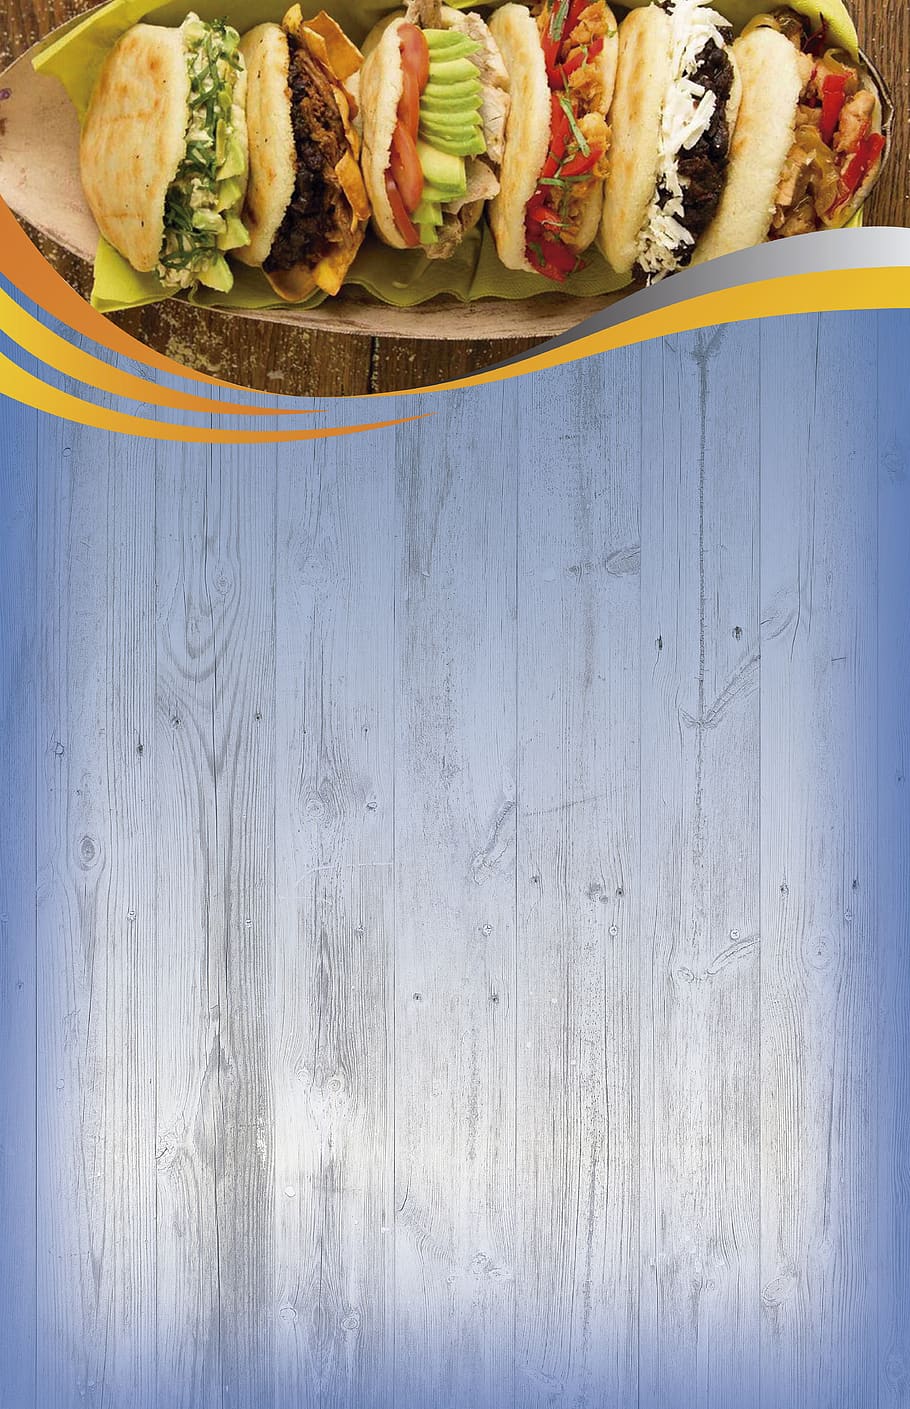 HD wallpaper: background, menu, chicken, letter, restaurant